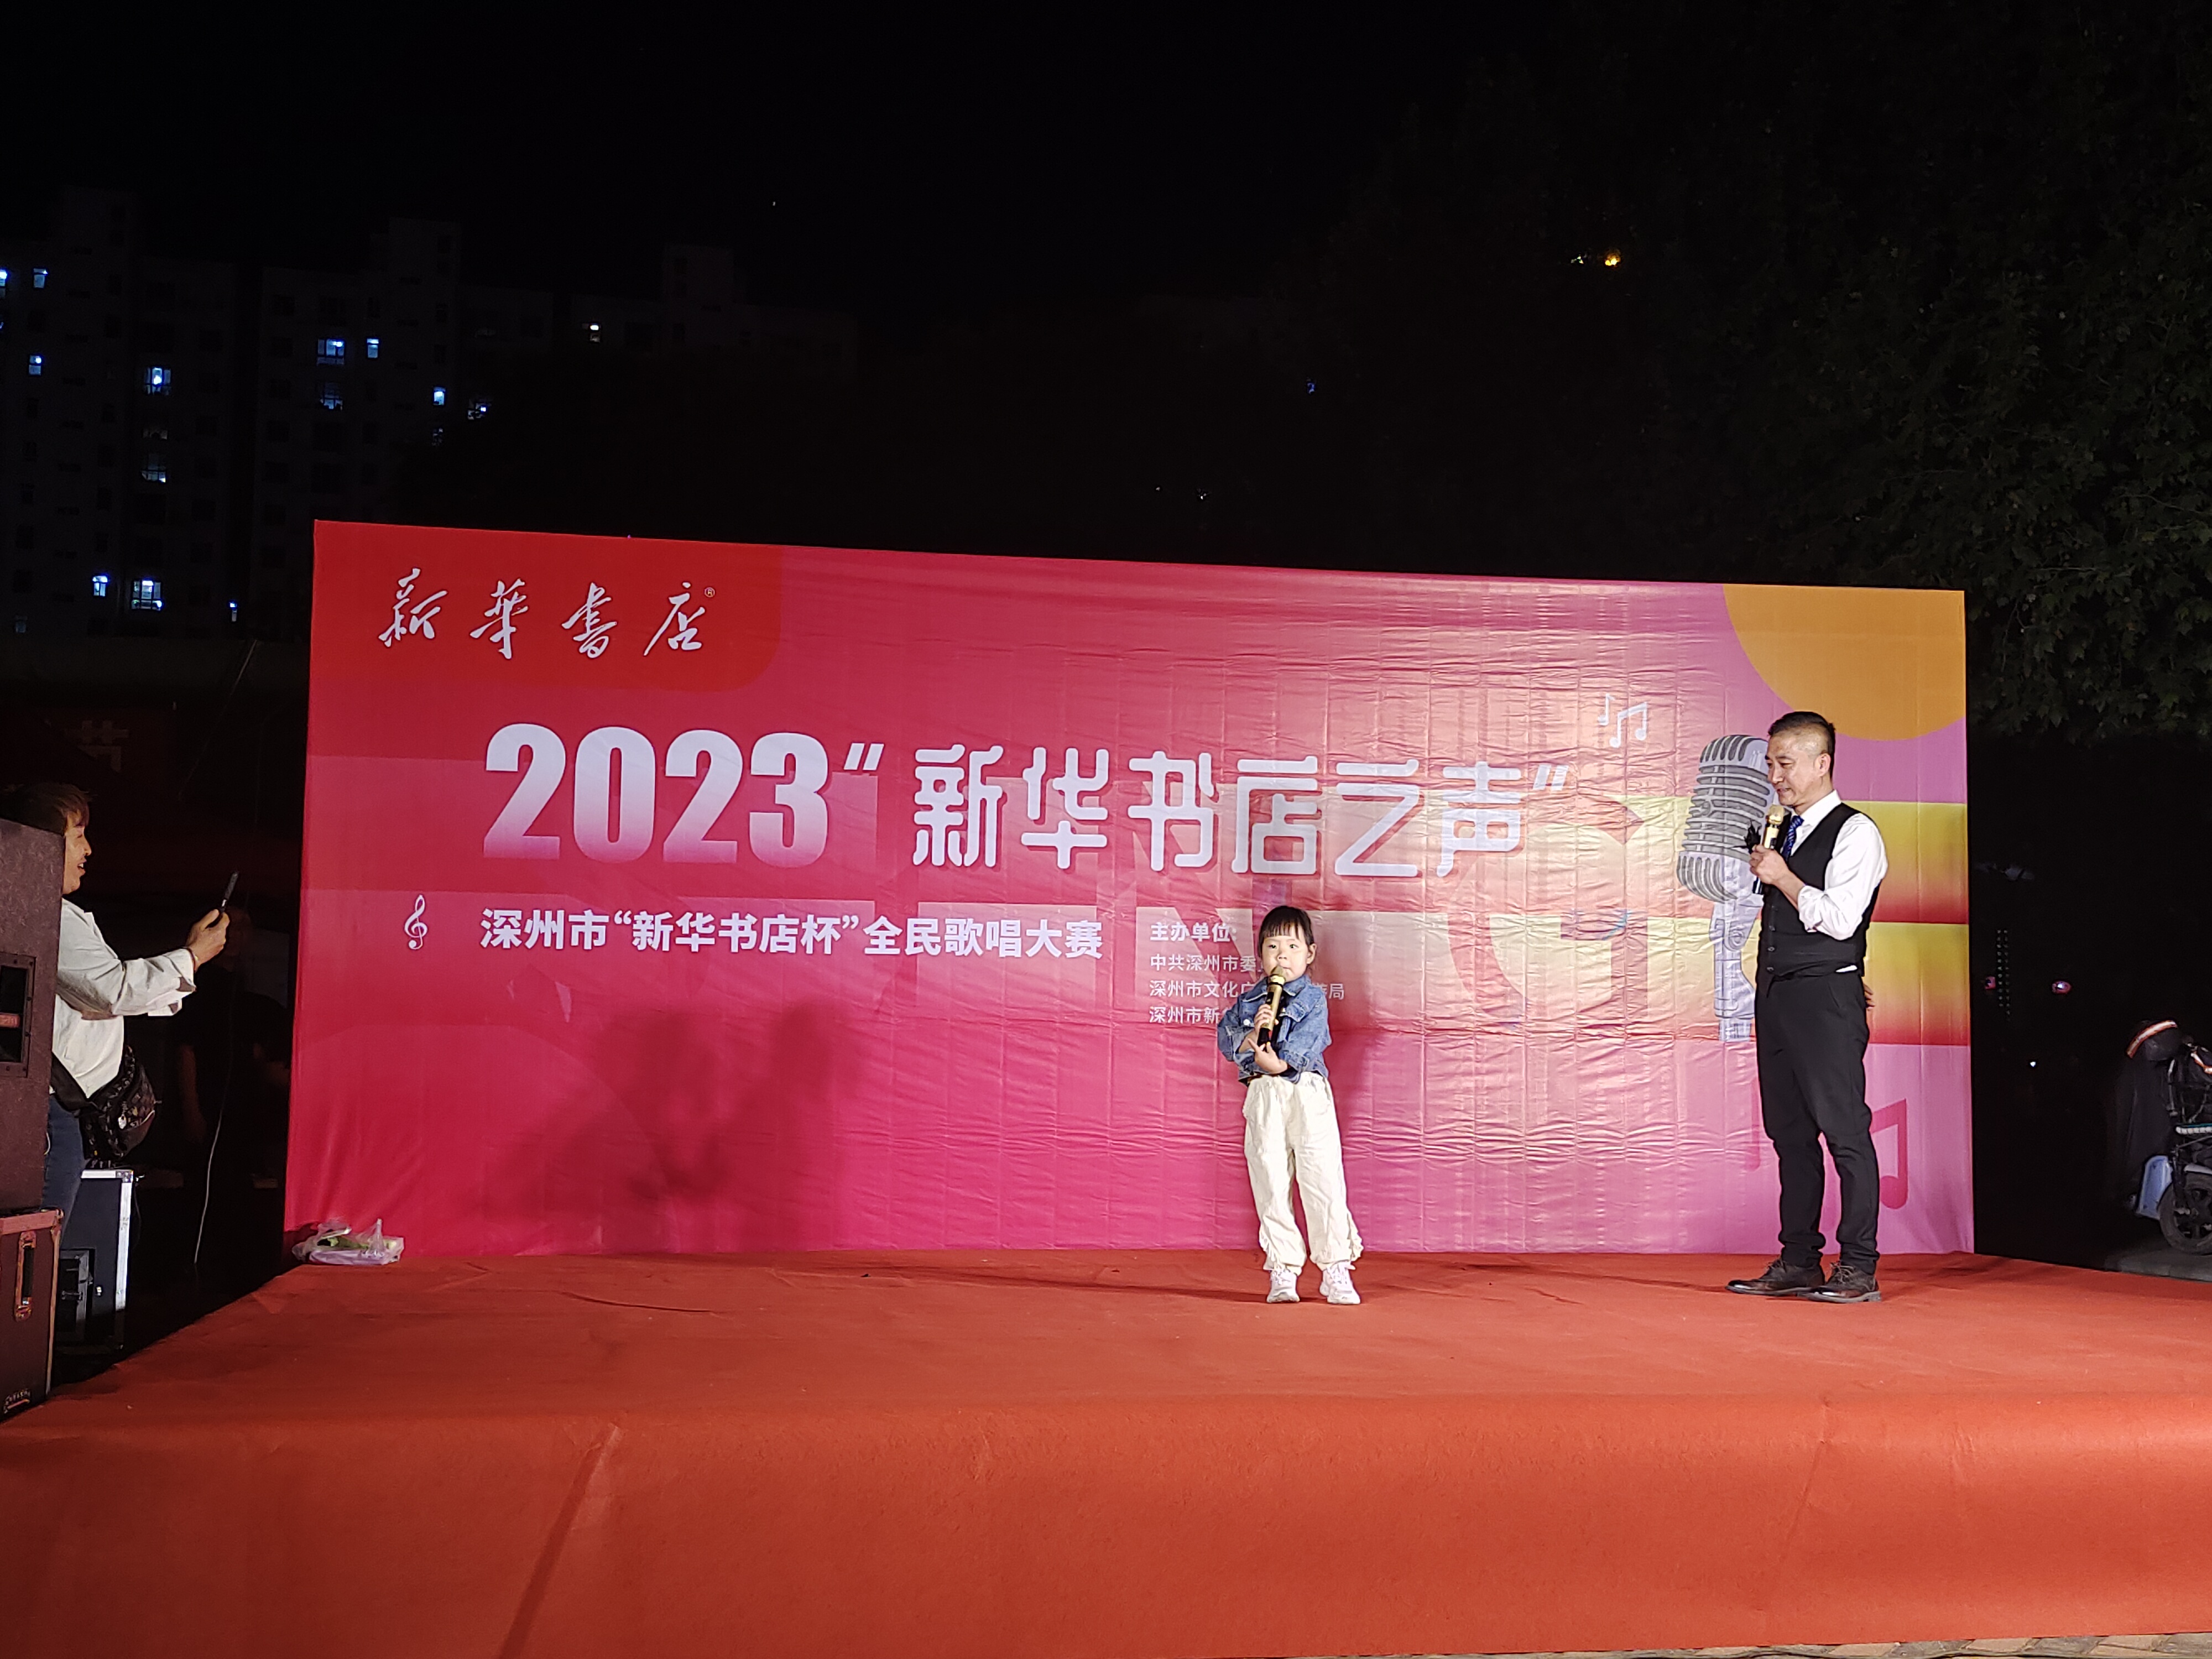 2022023“新华书店之声”全民歌唱大赛初赛第二场书香节现场激情开唱